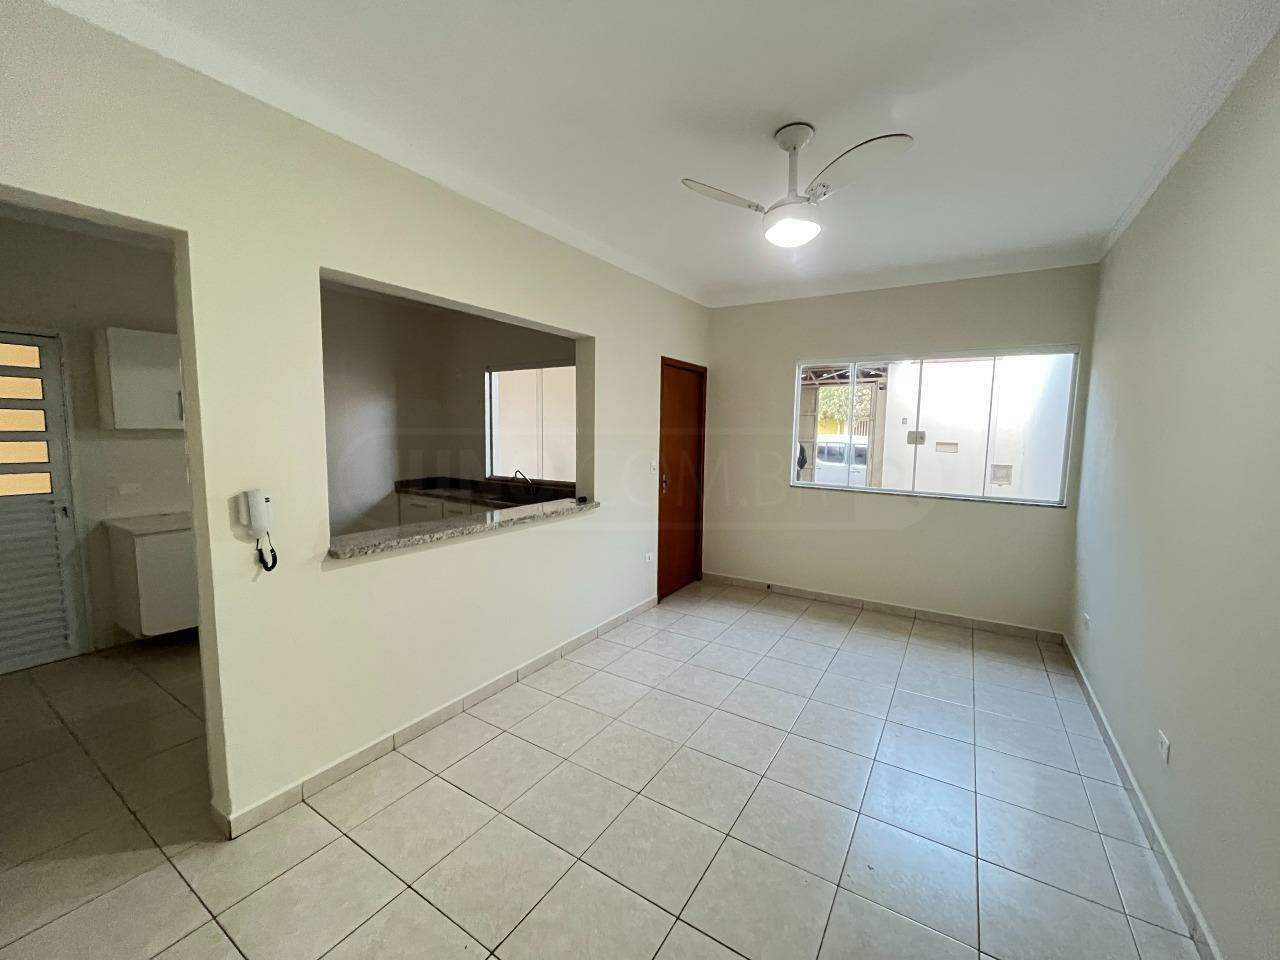 Casa à venda, 3 quartos, sendo 1 suíte, 2 vagas, no bairro Residencial Portal da Água Branca em Piracicaba - SP